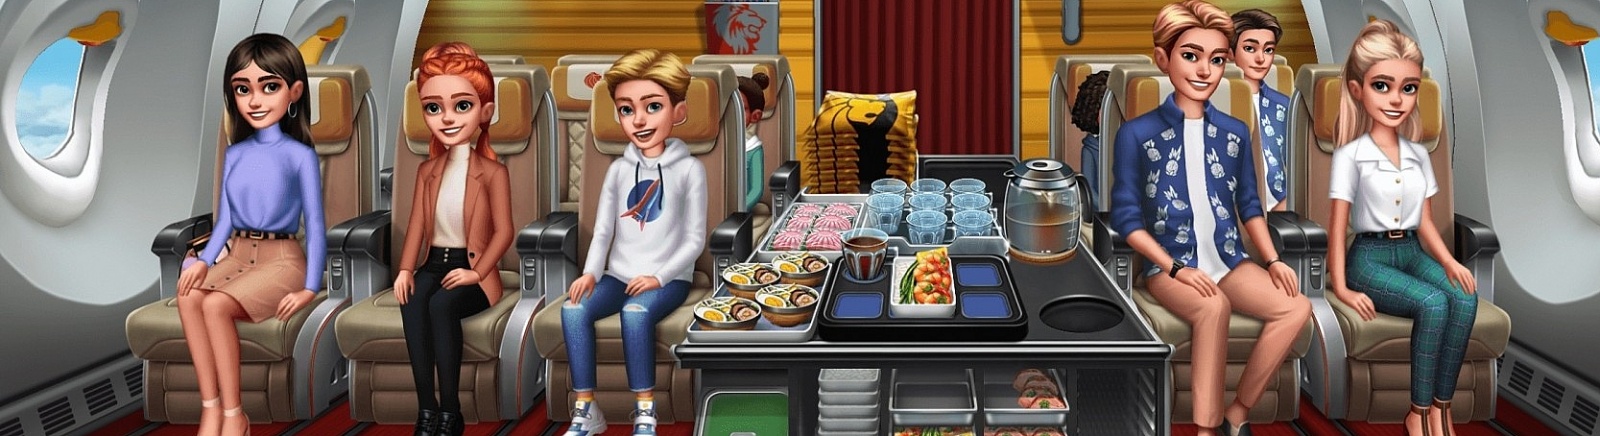 Дата выхода Airplane Chefs  на iOS и Android в России и во всем мире